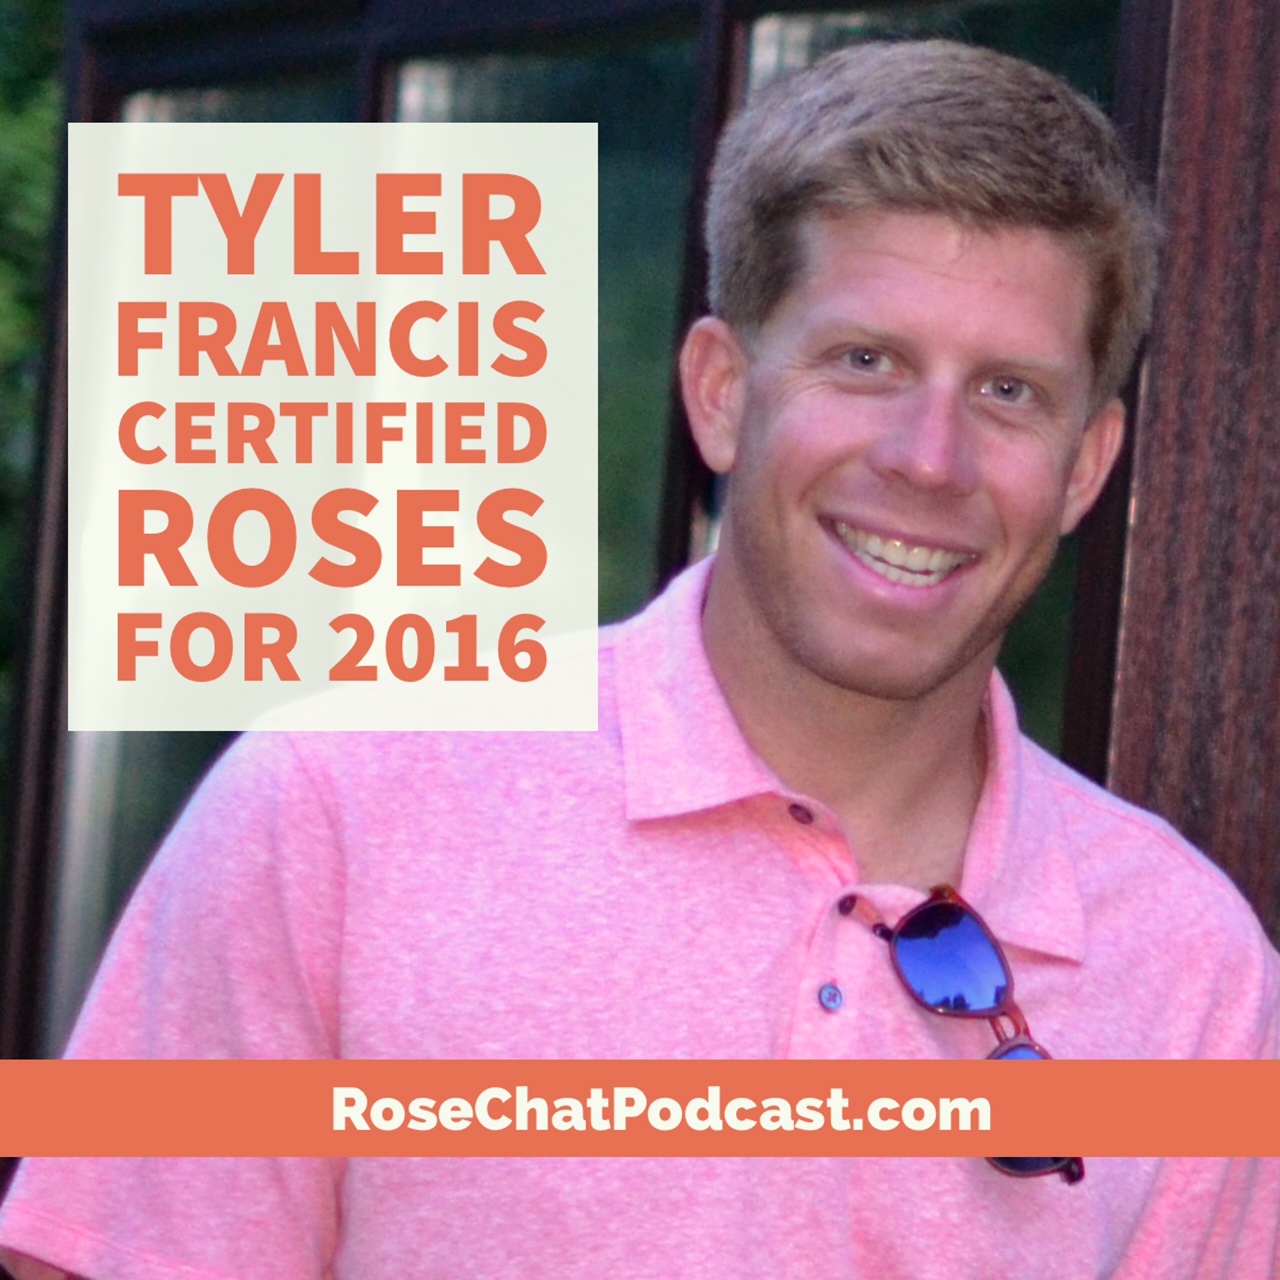 Tyler Francis | Certified Roses for 2016 + Bonus Track